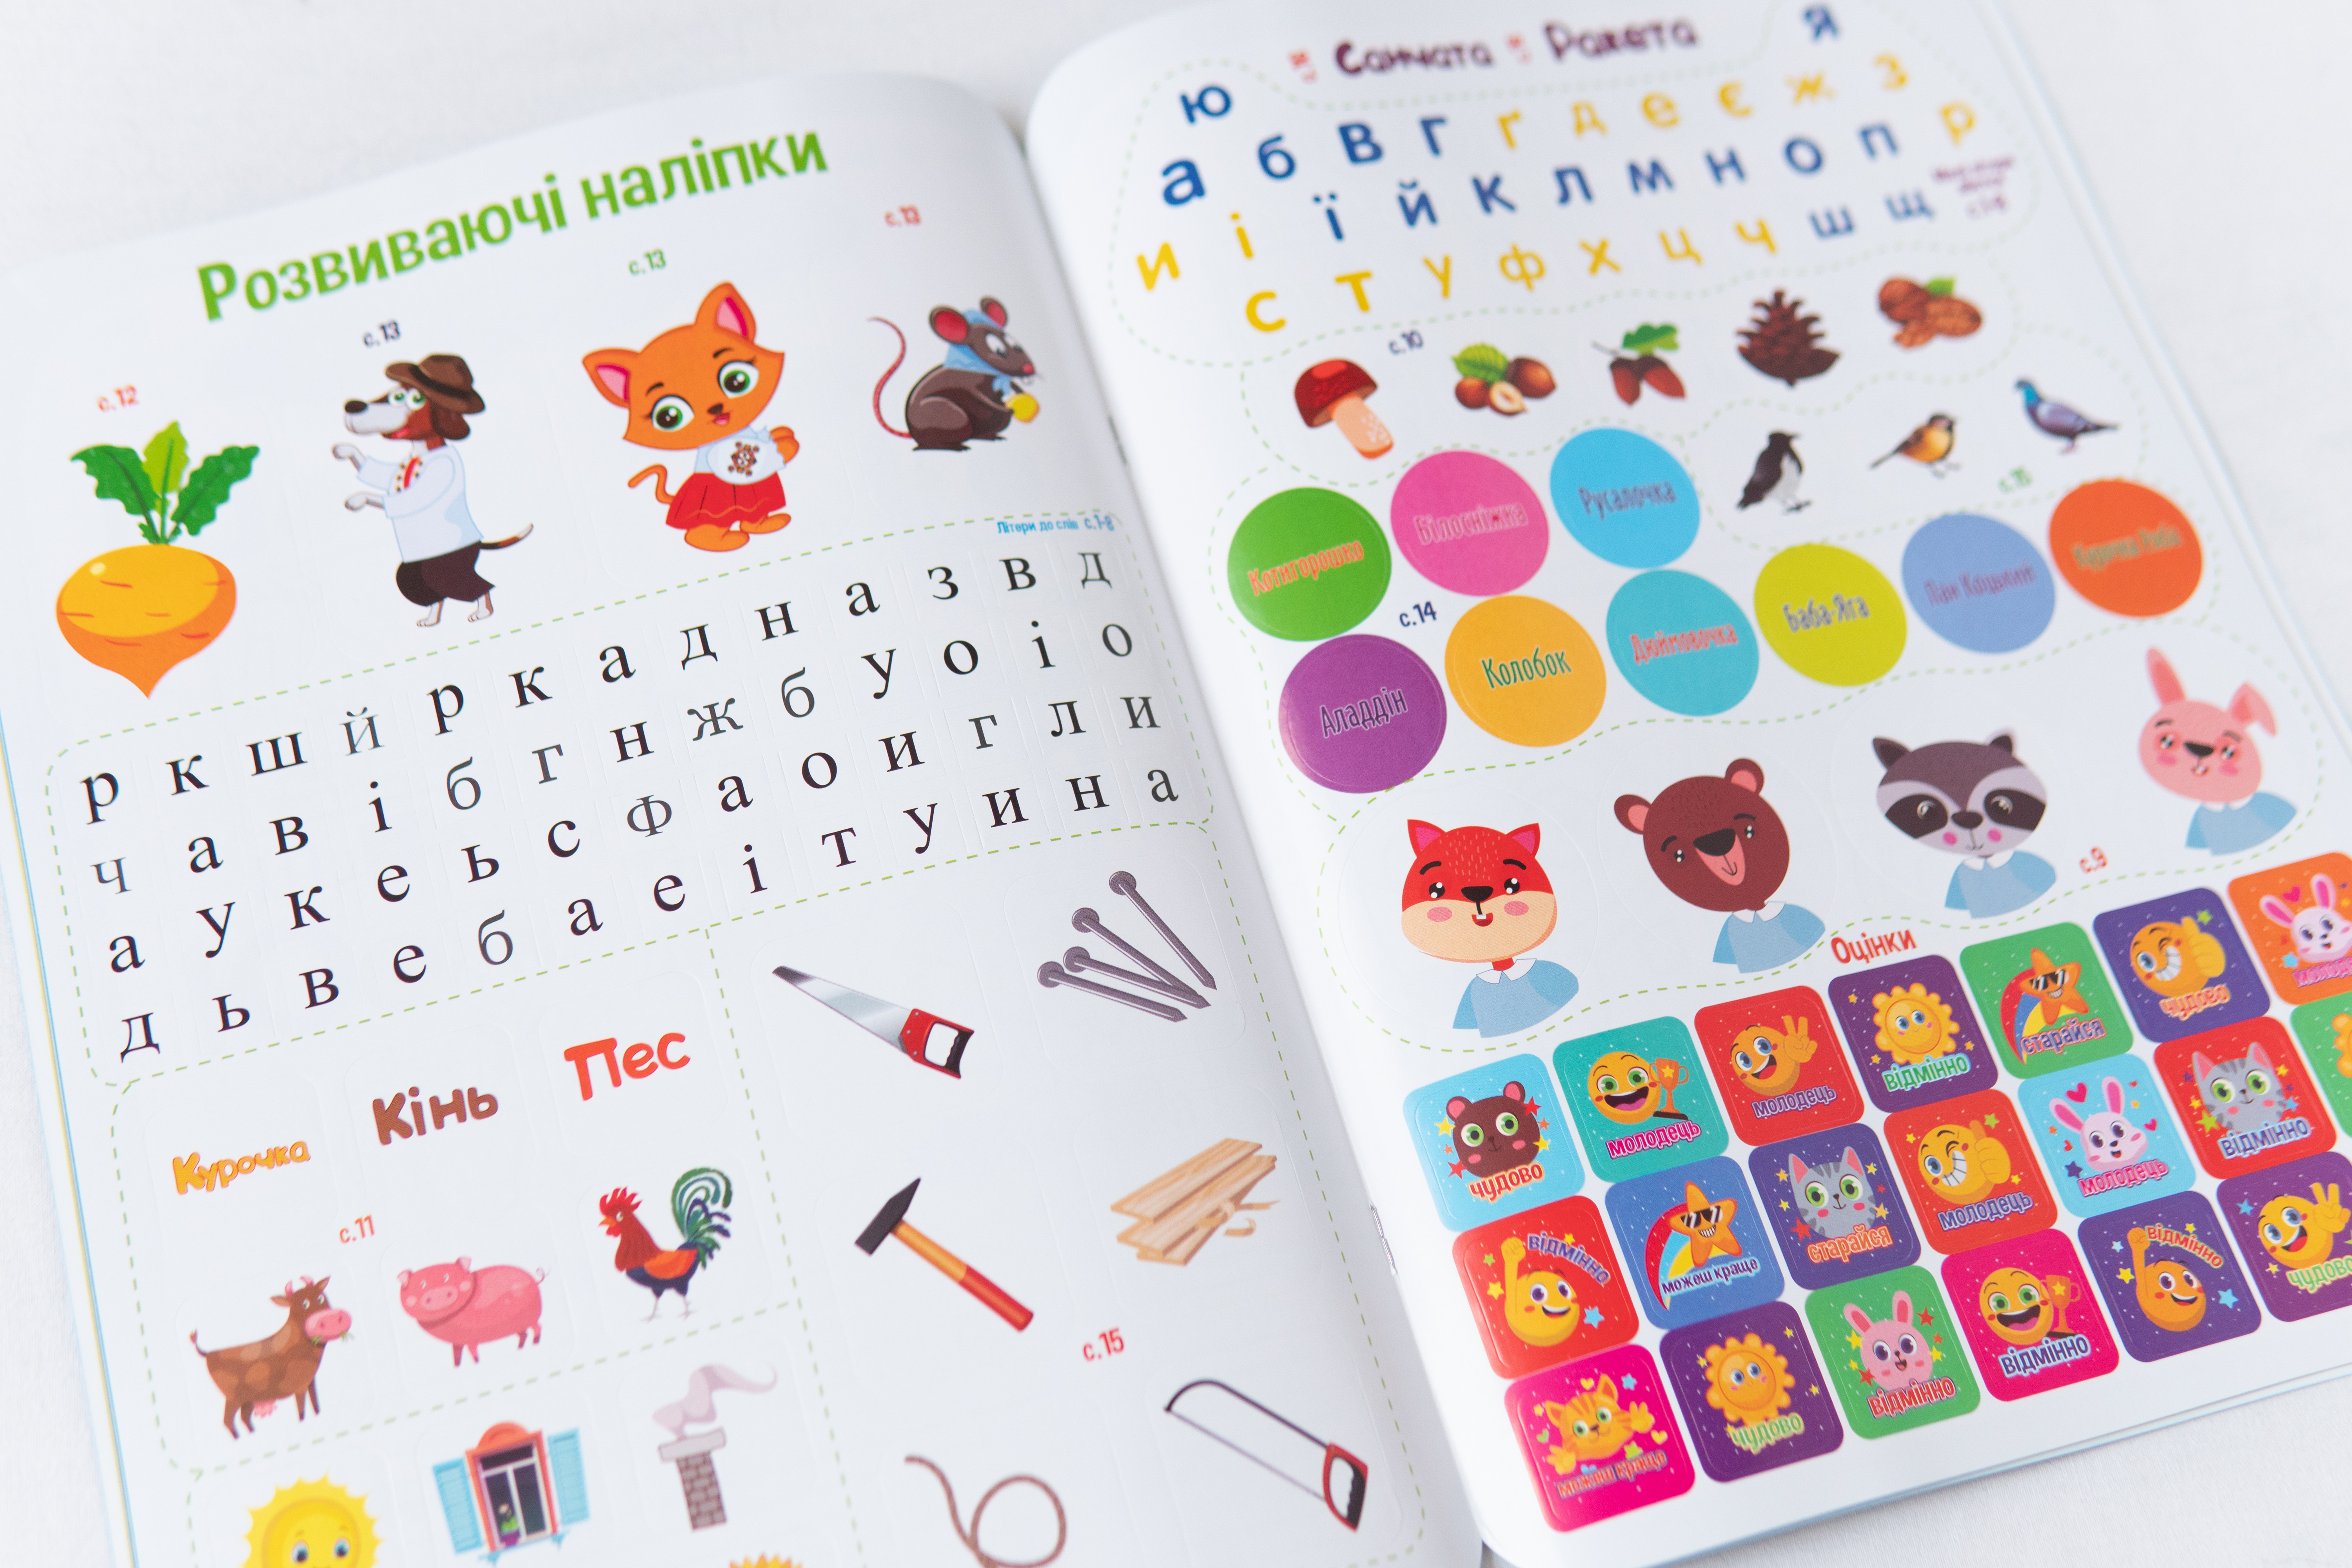 Entwicklungs-Tablet Bukvarik - Vorbereitung auf die Schule, Kinderbuch auf Ukrainisch/Entwicklungs-Tablet Bukvarik - Vorbereitung auf die Schule, Kinderbuch auf Ukrainisch